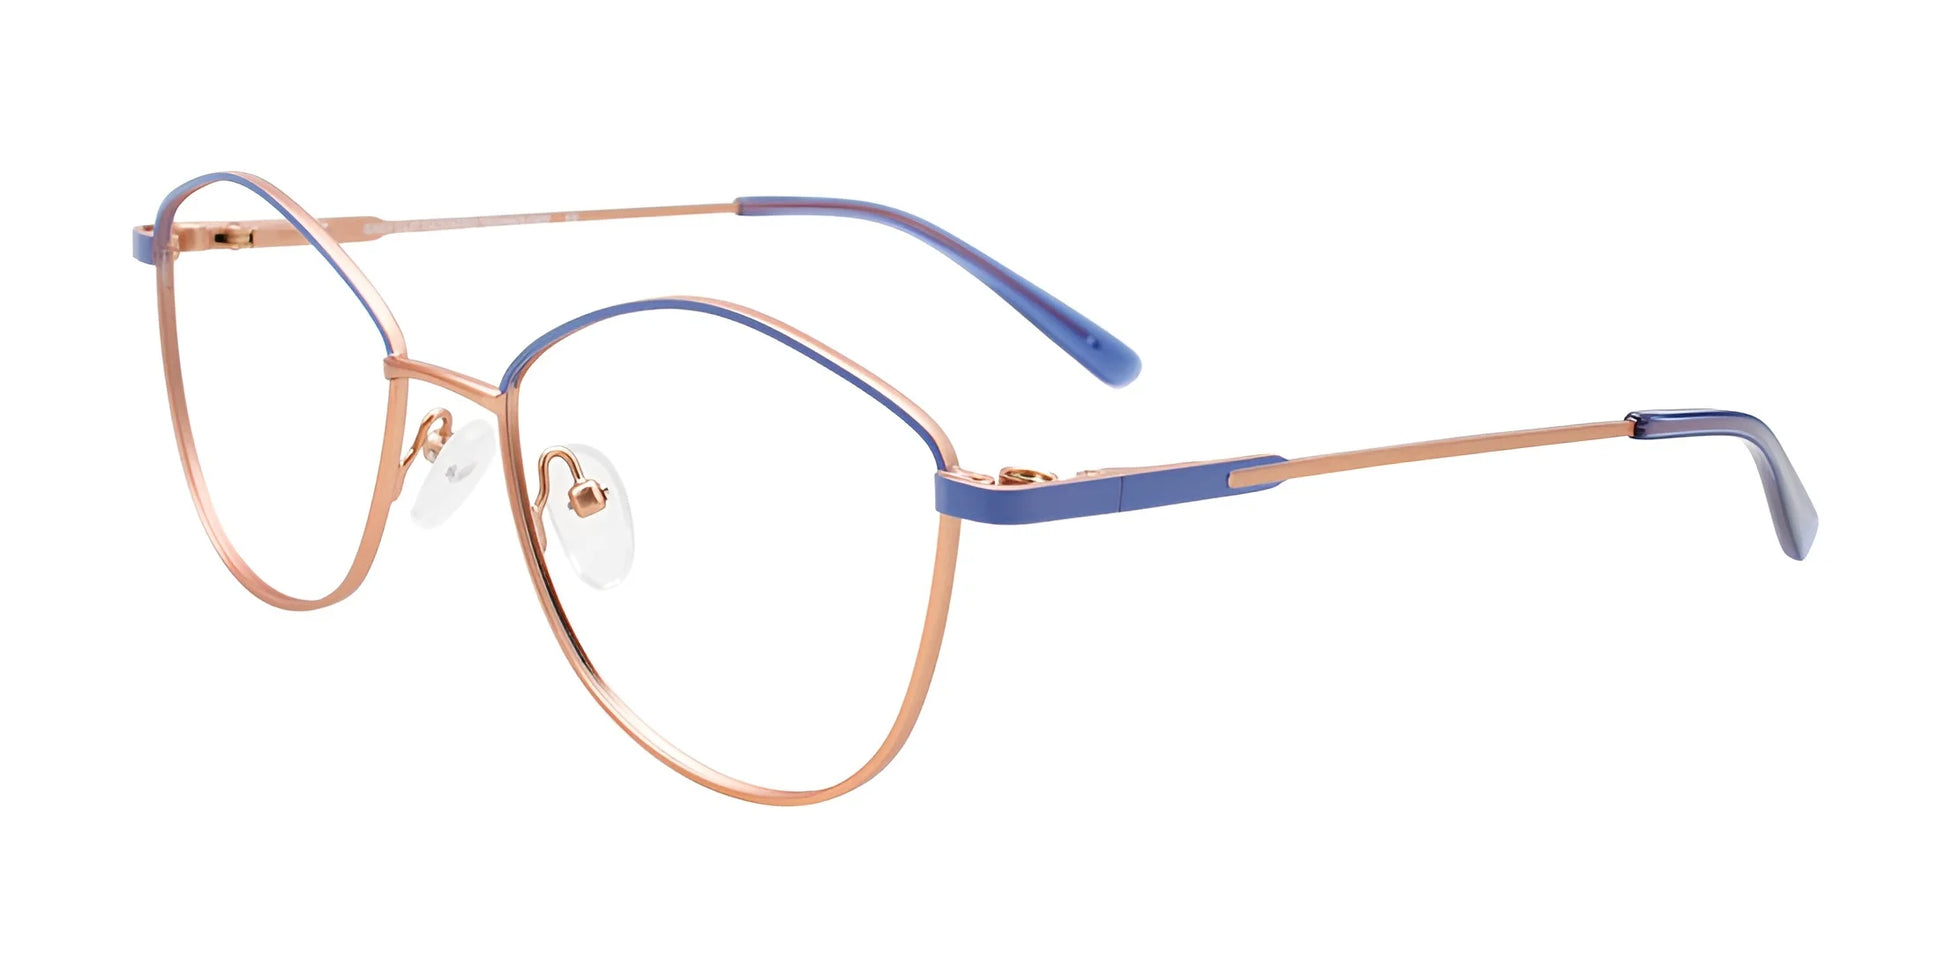 EasyClip EC608 Eyeglasses Blue & Light Copper